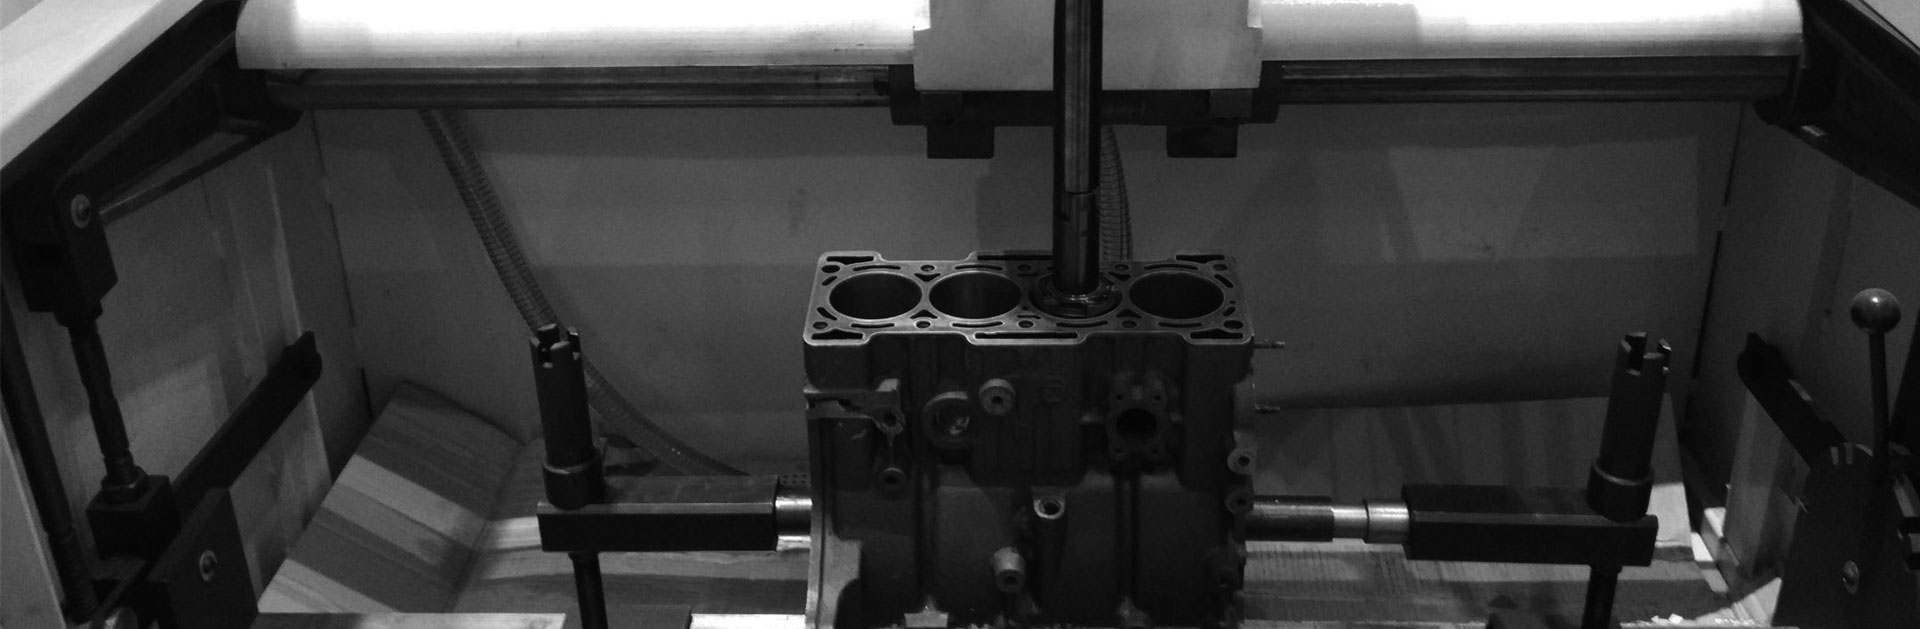 Liluho machining Service - CNC liluho China